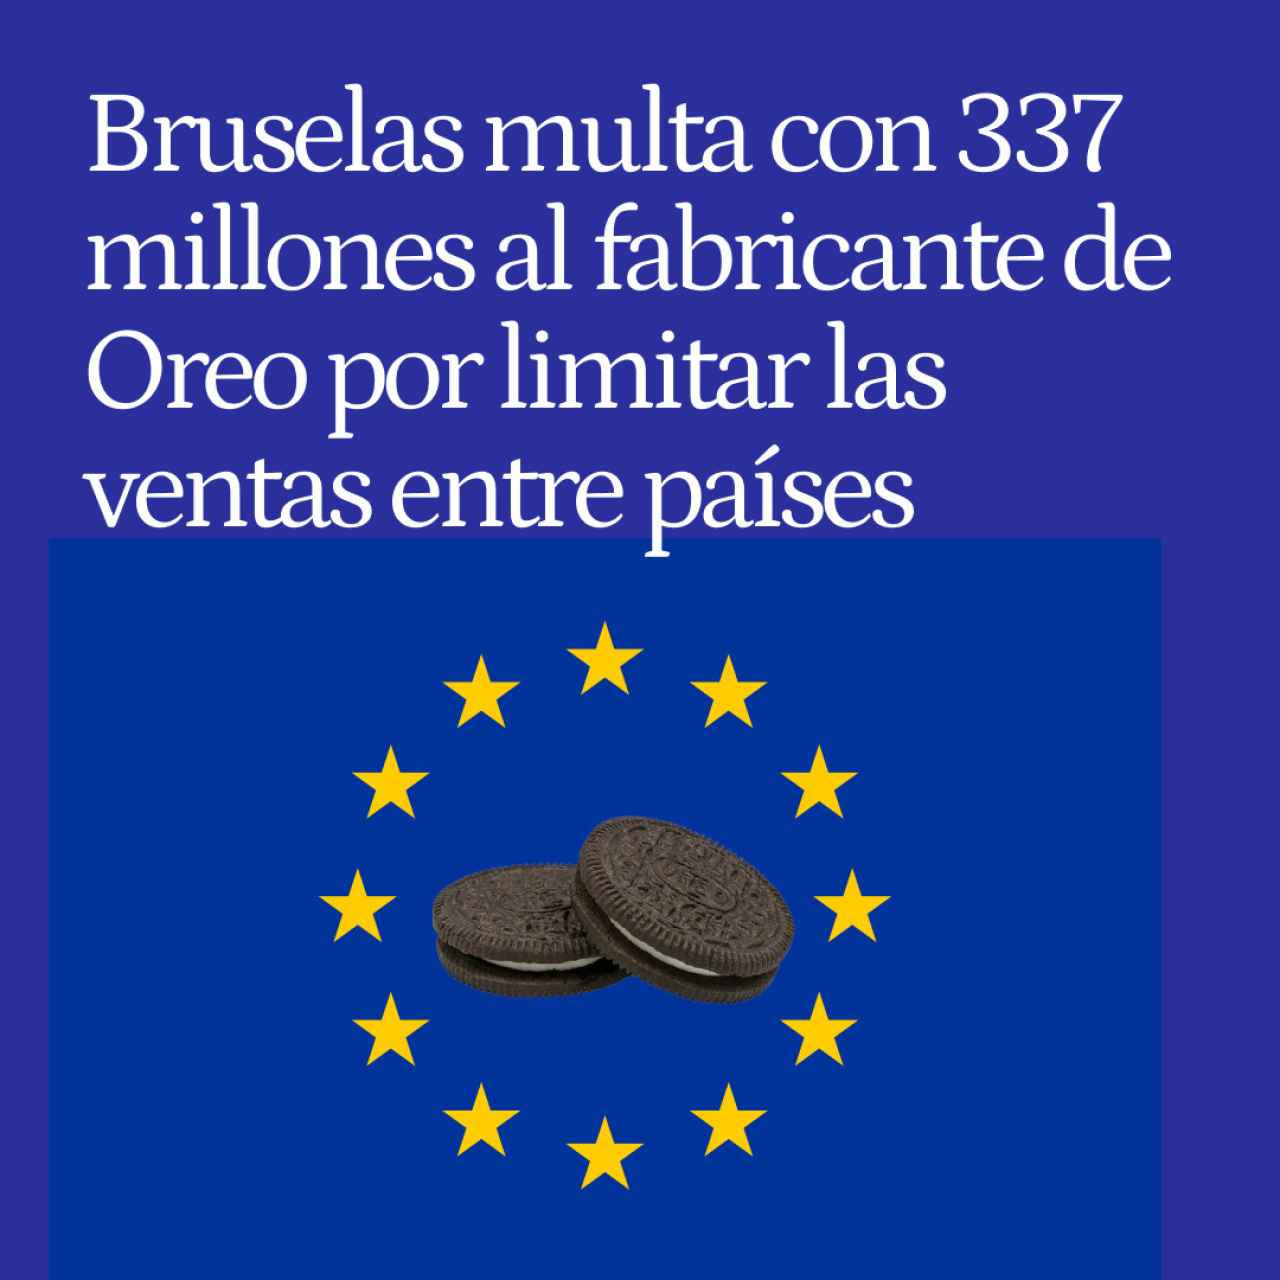 Bruselas multa con 337 millones al fabricante de Oreo por limitar las ventas transfronterizas